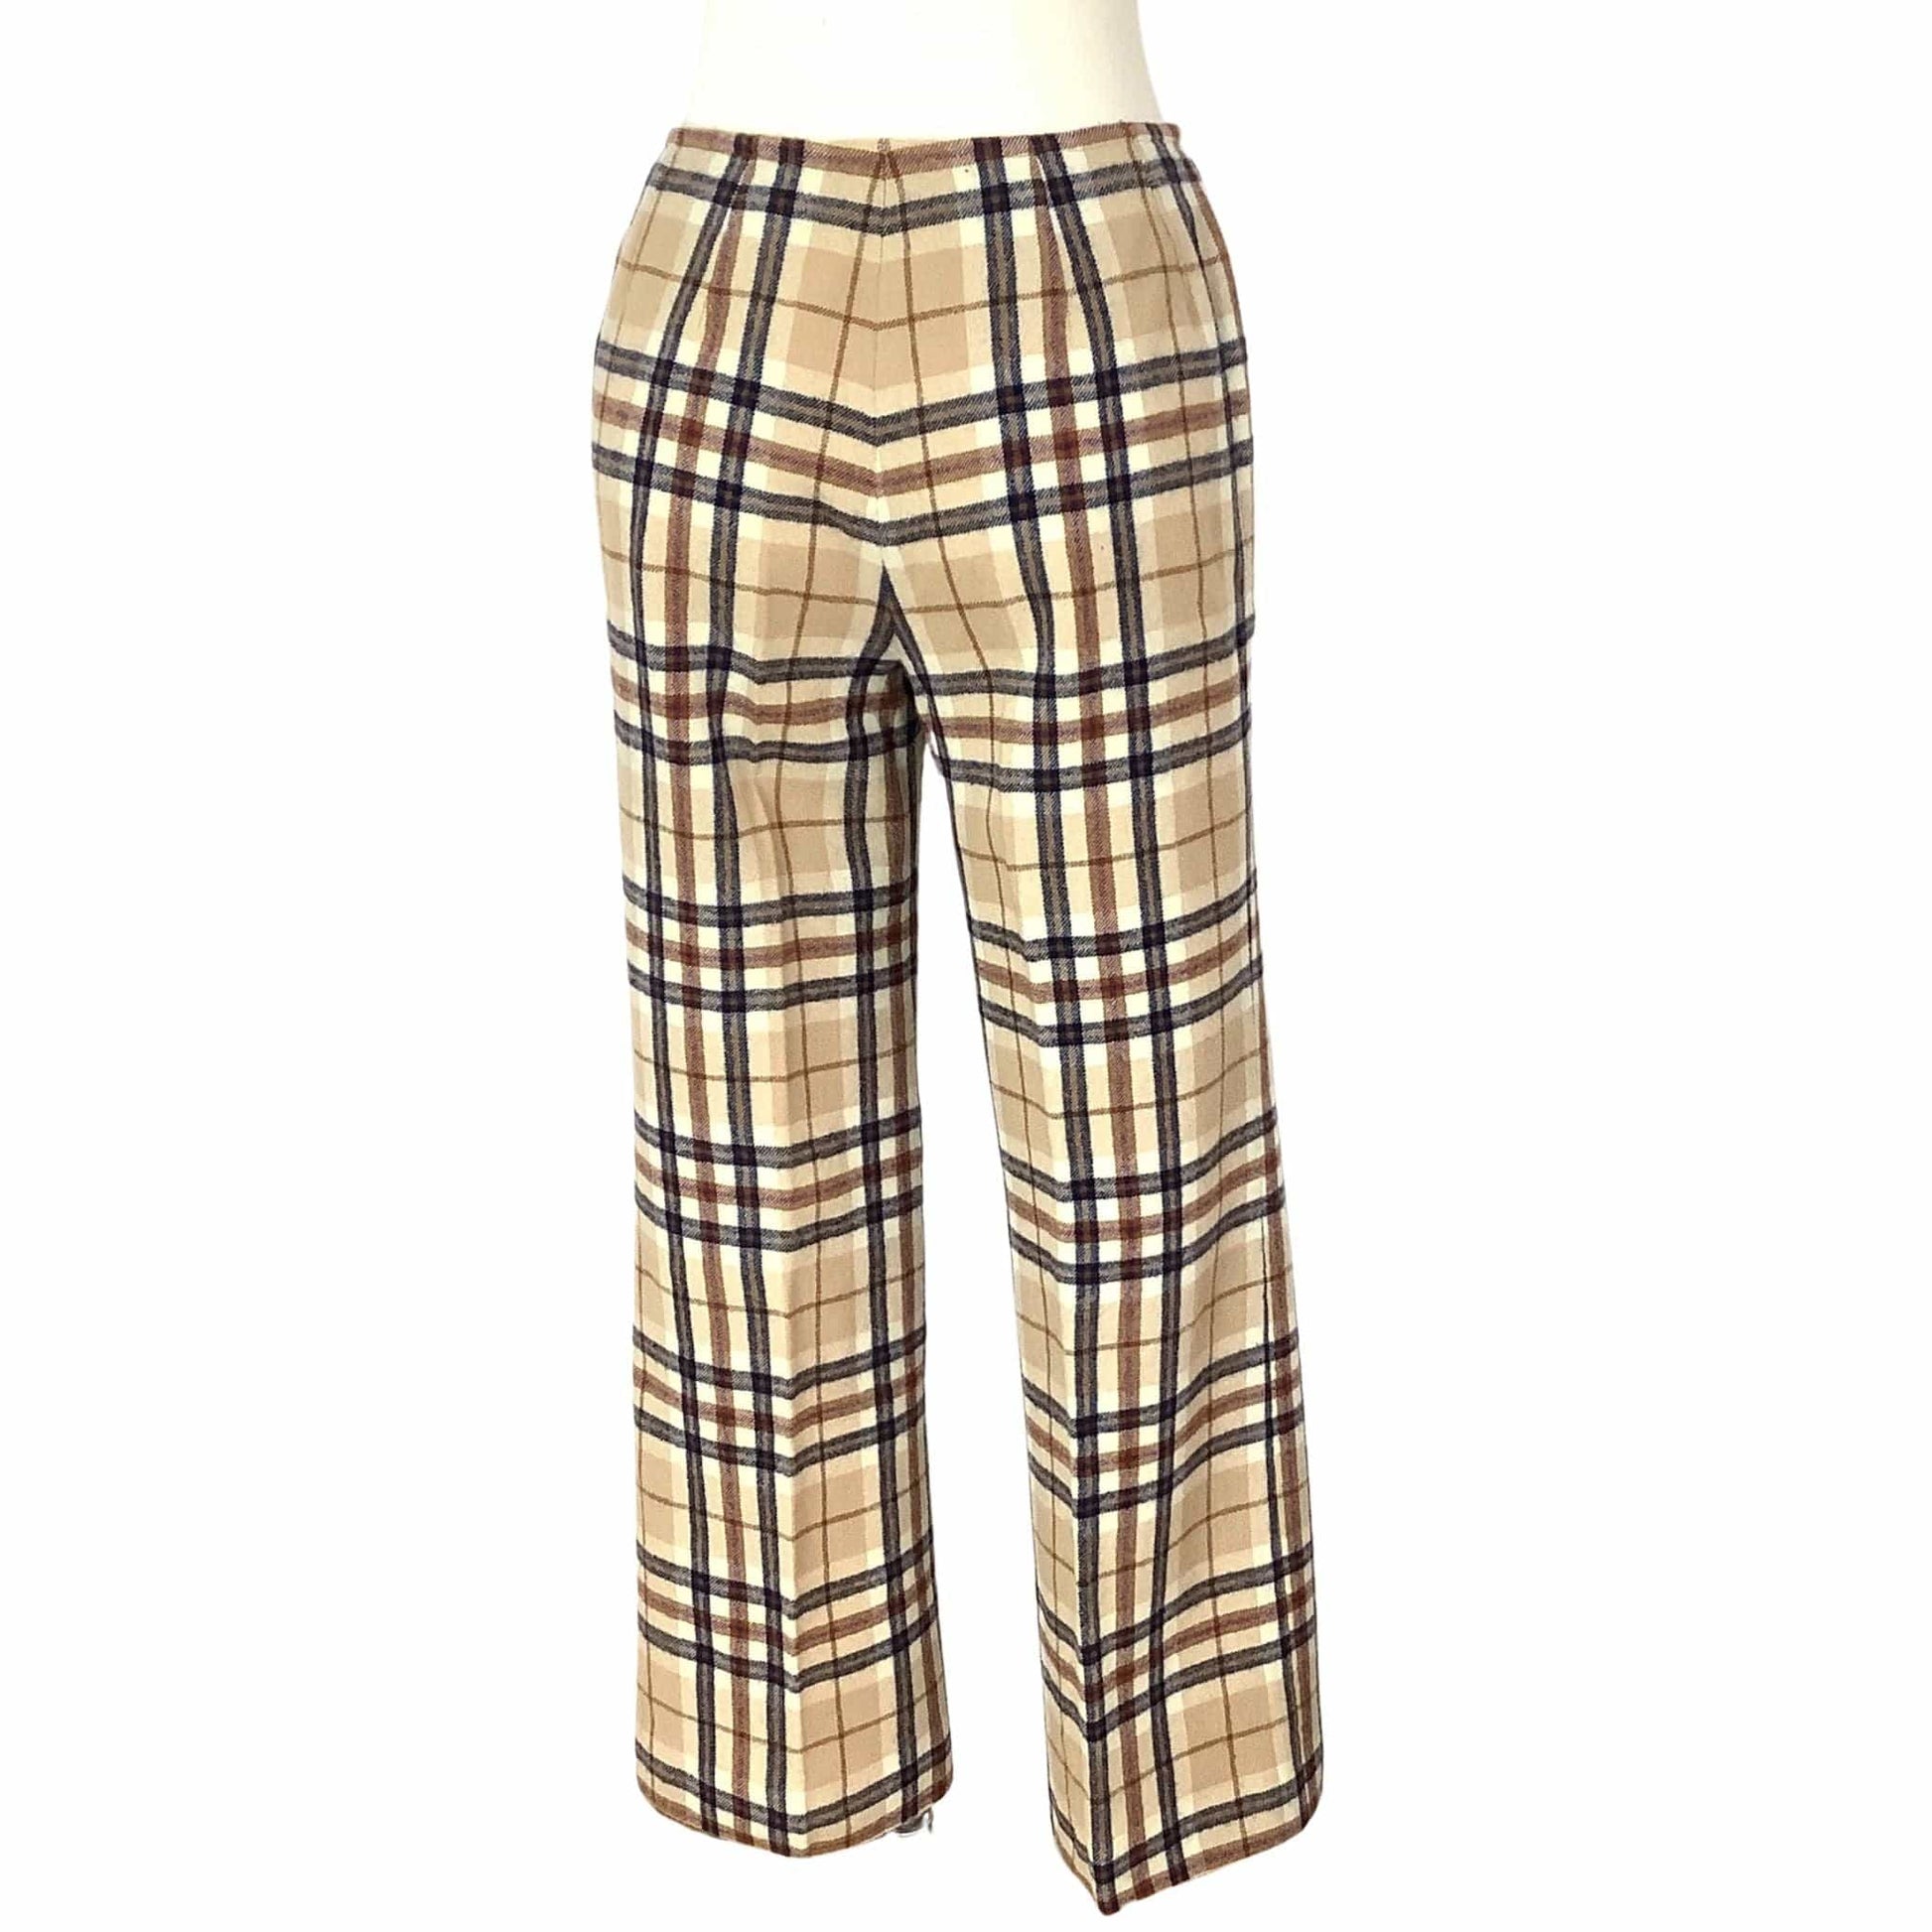 Vintage Pendleton Pants Medium / Multi / Vintage 1970s